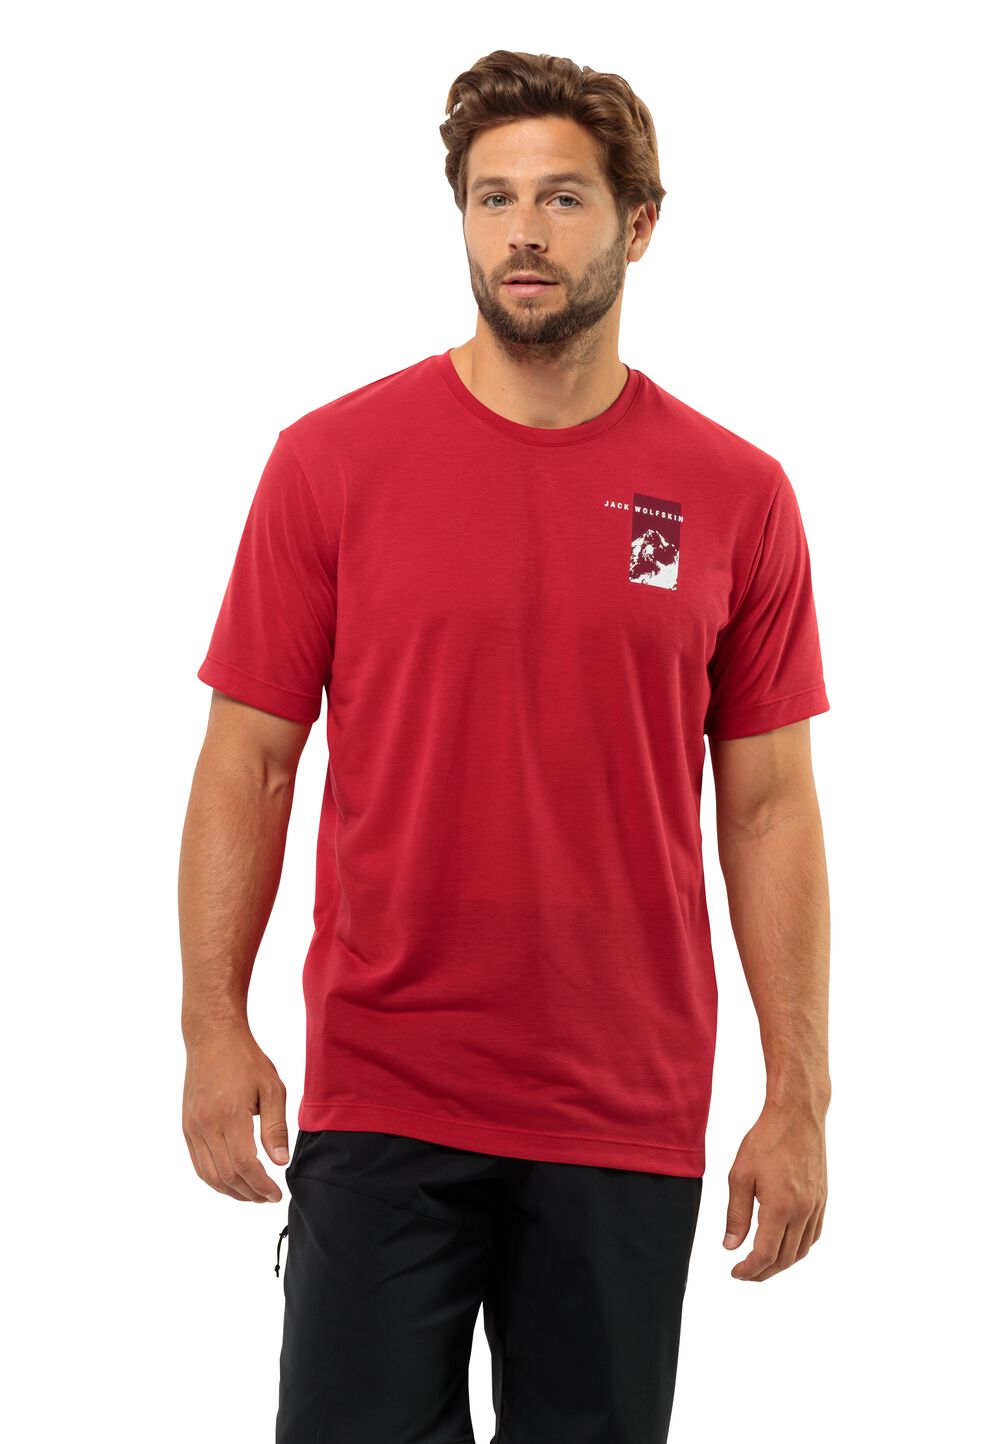 Jack Wolfskin Vonnan S S Graphic T-Shirt Men Functioneel shirt Heren XL rood red glow